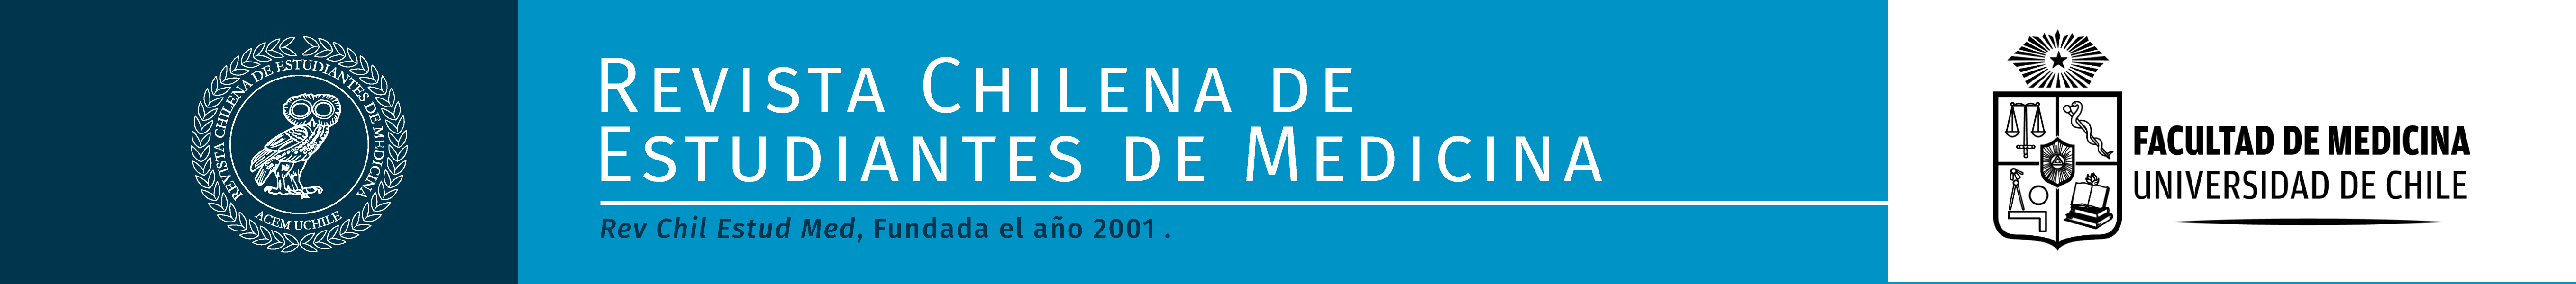 Revista Chilena de Estudiantes de Medicina